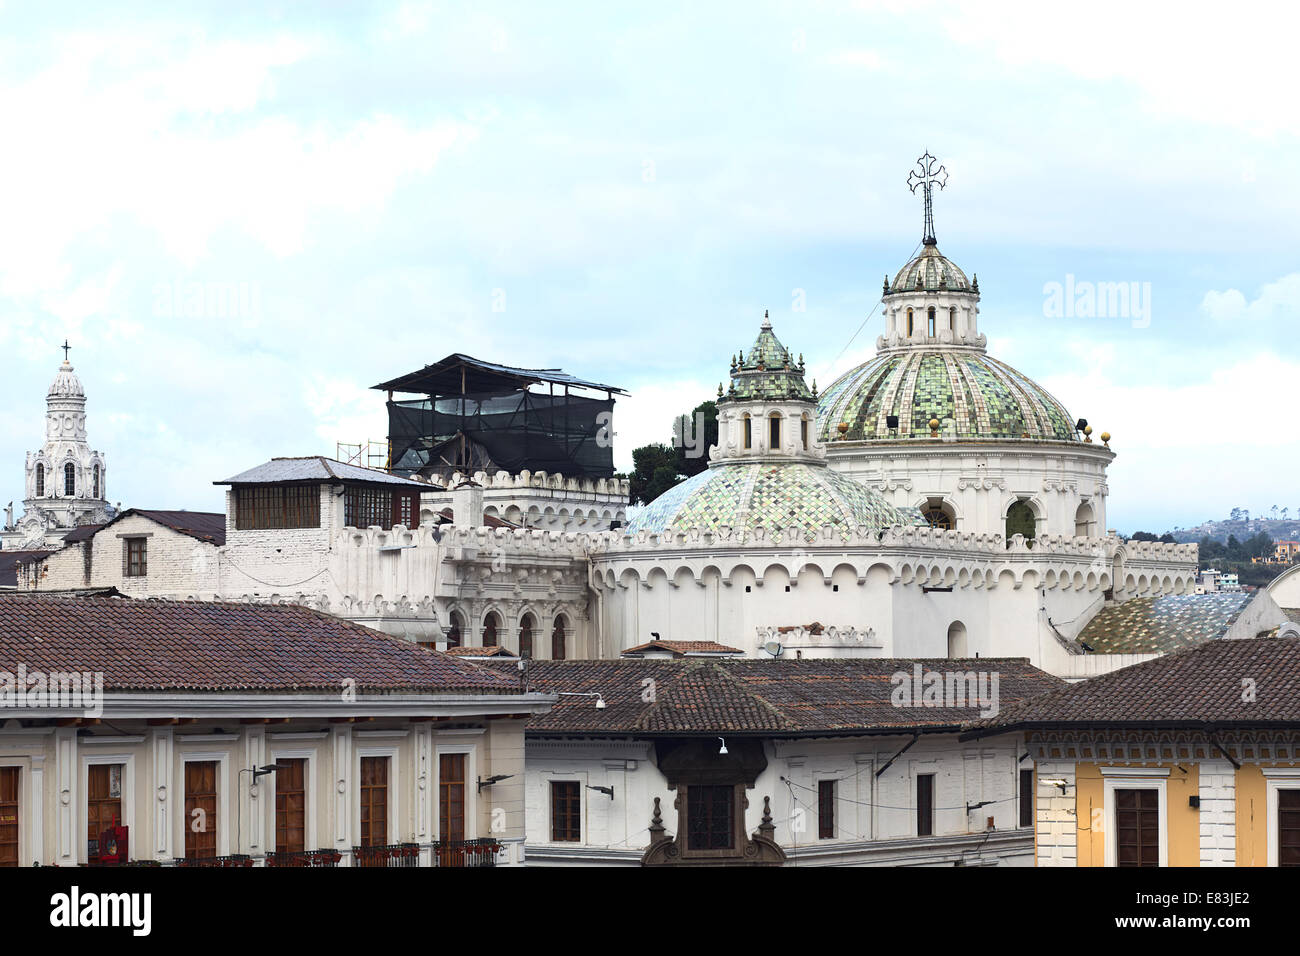 The domes of the Iglesia de la Compania de Jesus (Church of the Society of Jesus) in the city center in Quito, Ecuador Stock Photo